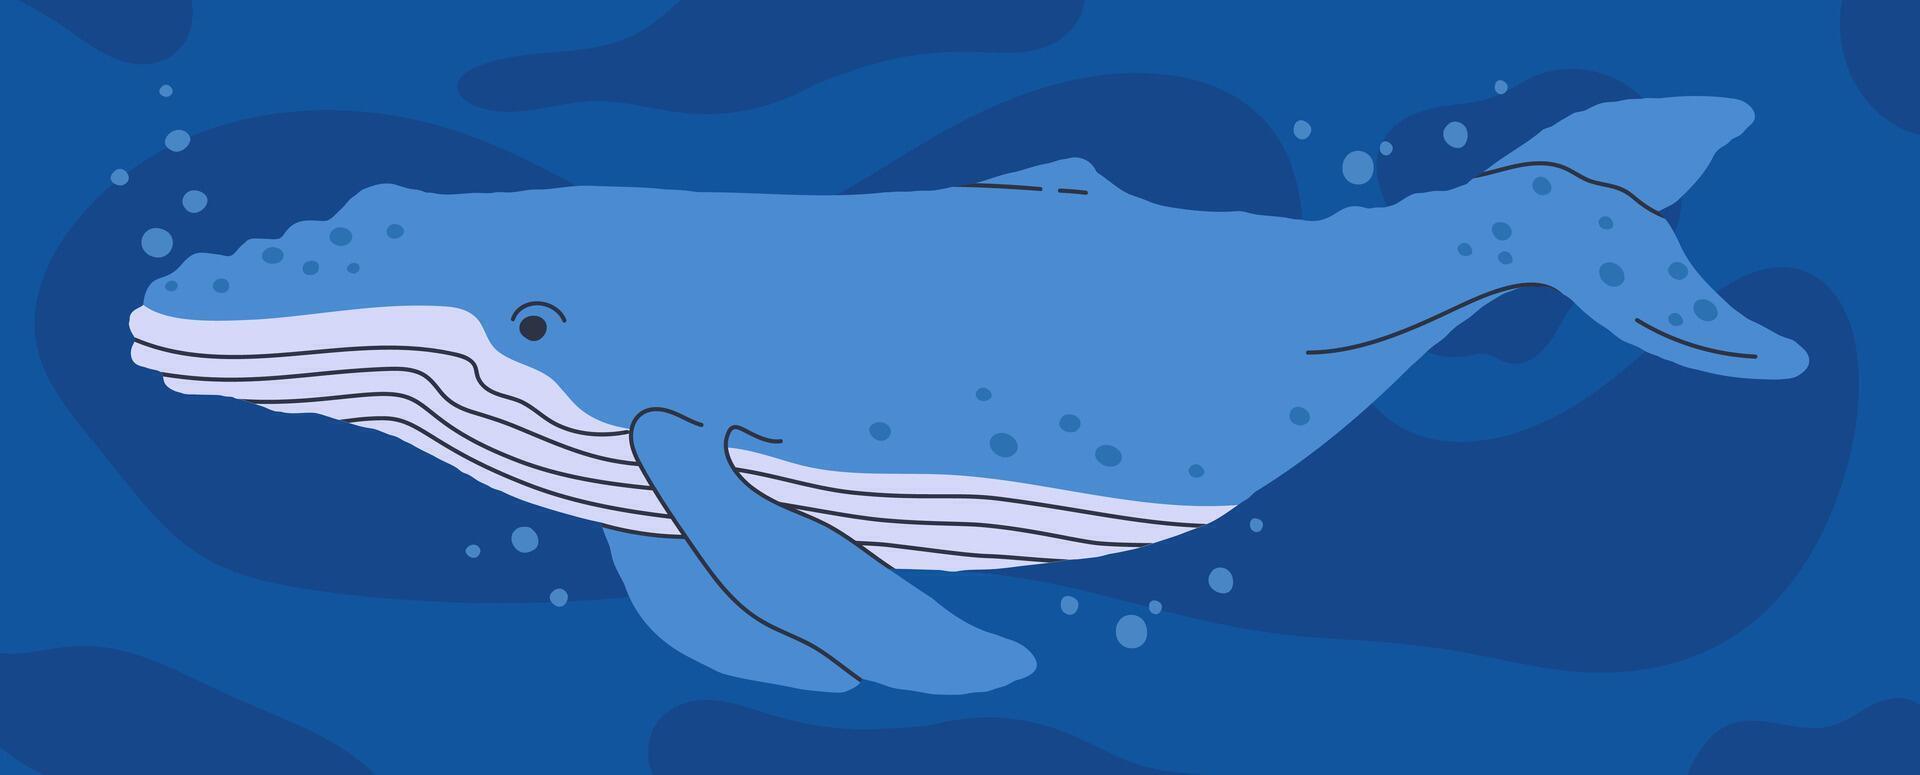 selvagem baleia. embaixo da agua oceano animal, aquático fauna, oceano natureza mamífero animal plano ilustração. mão desenhado azul baleia vetor